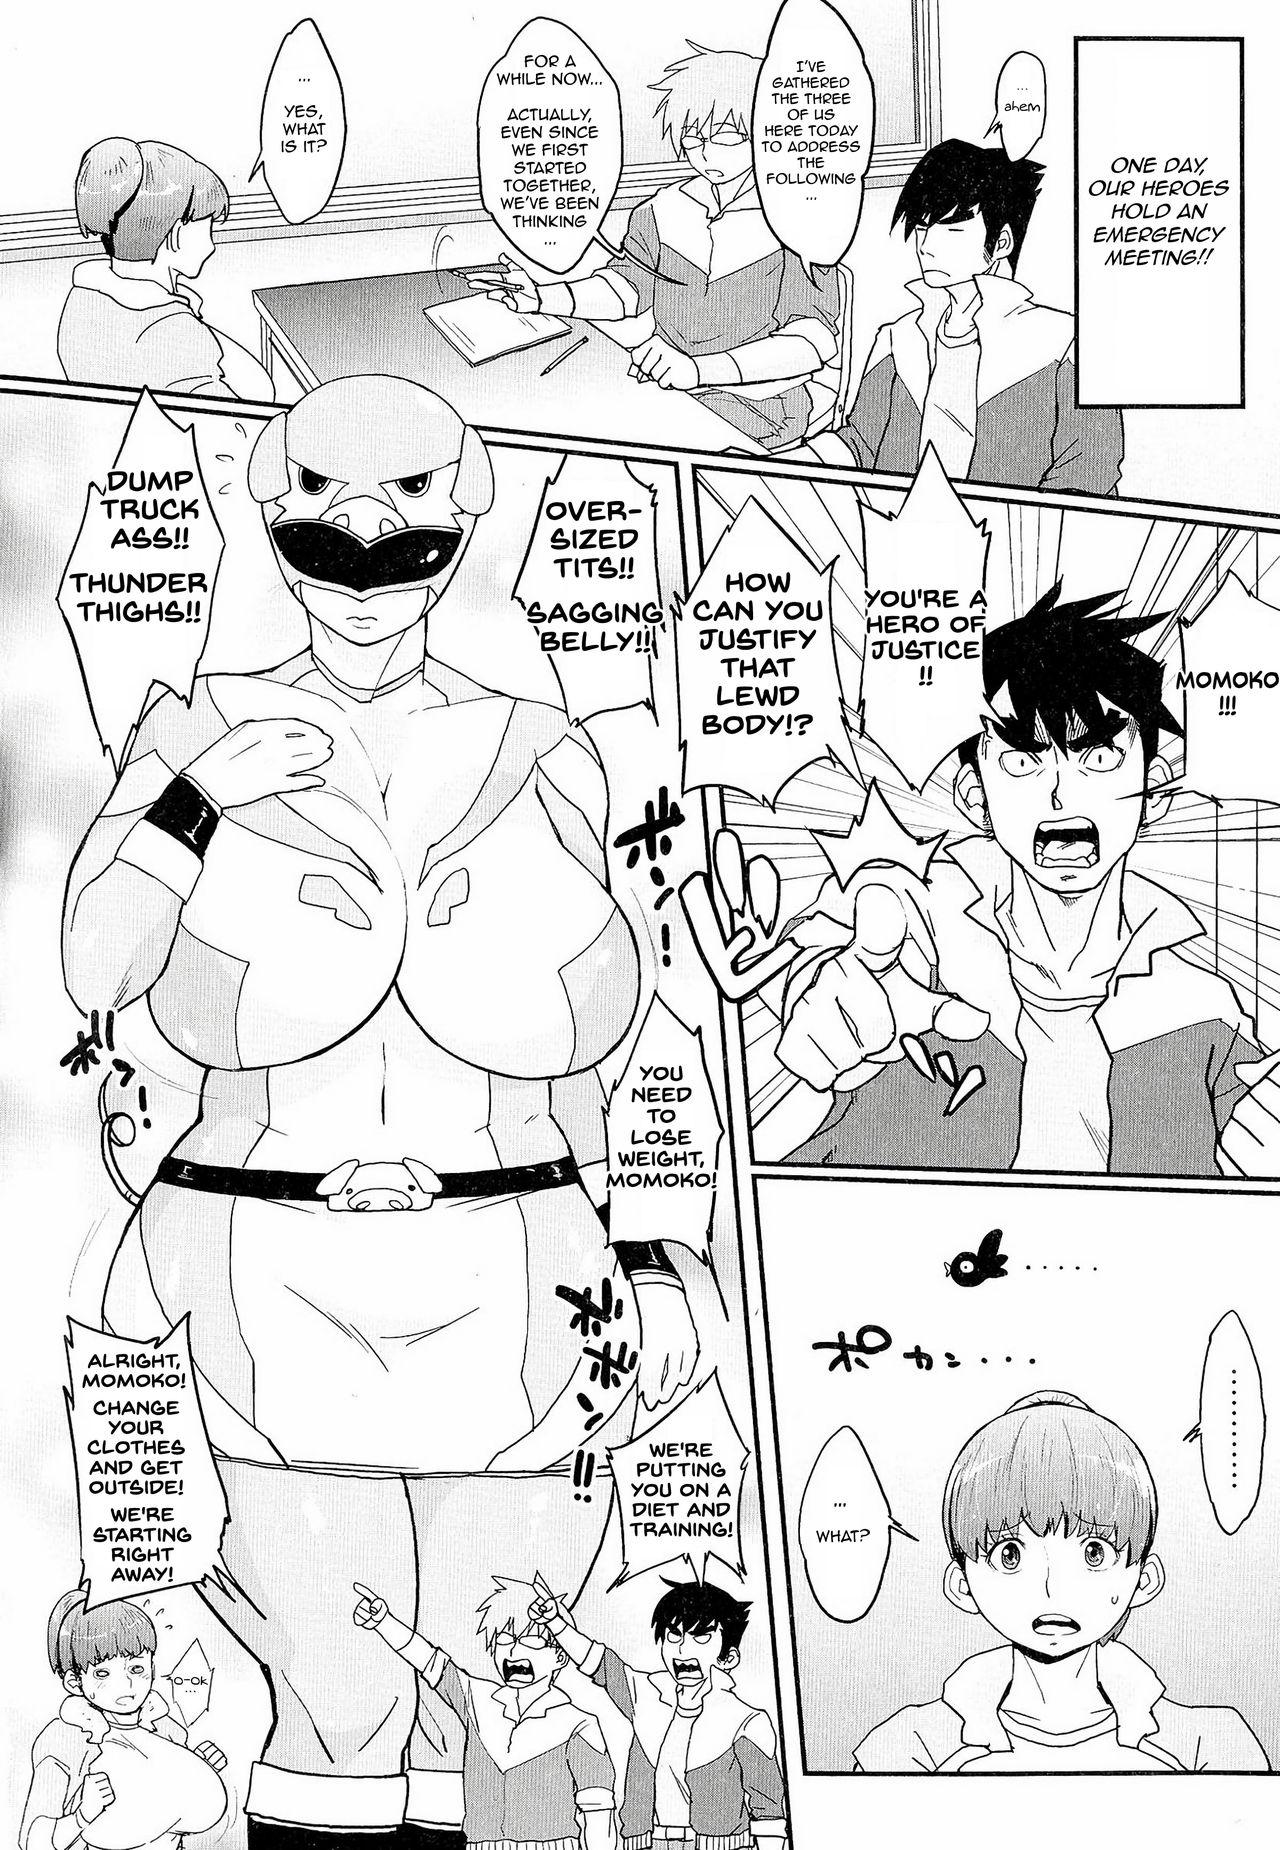 Momoko's Diet Strategy 1